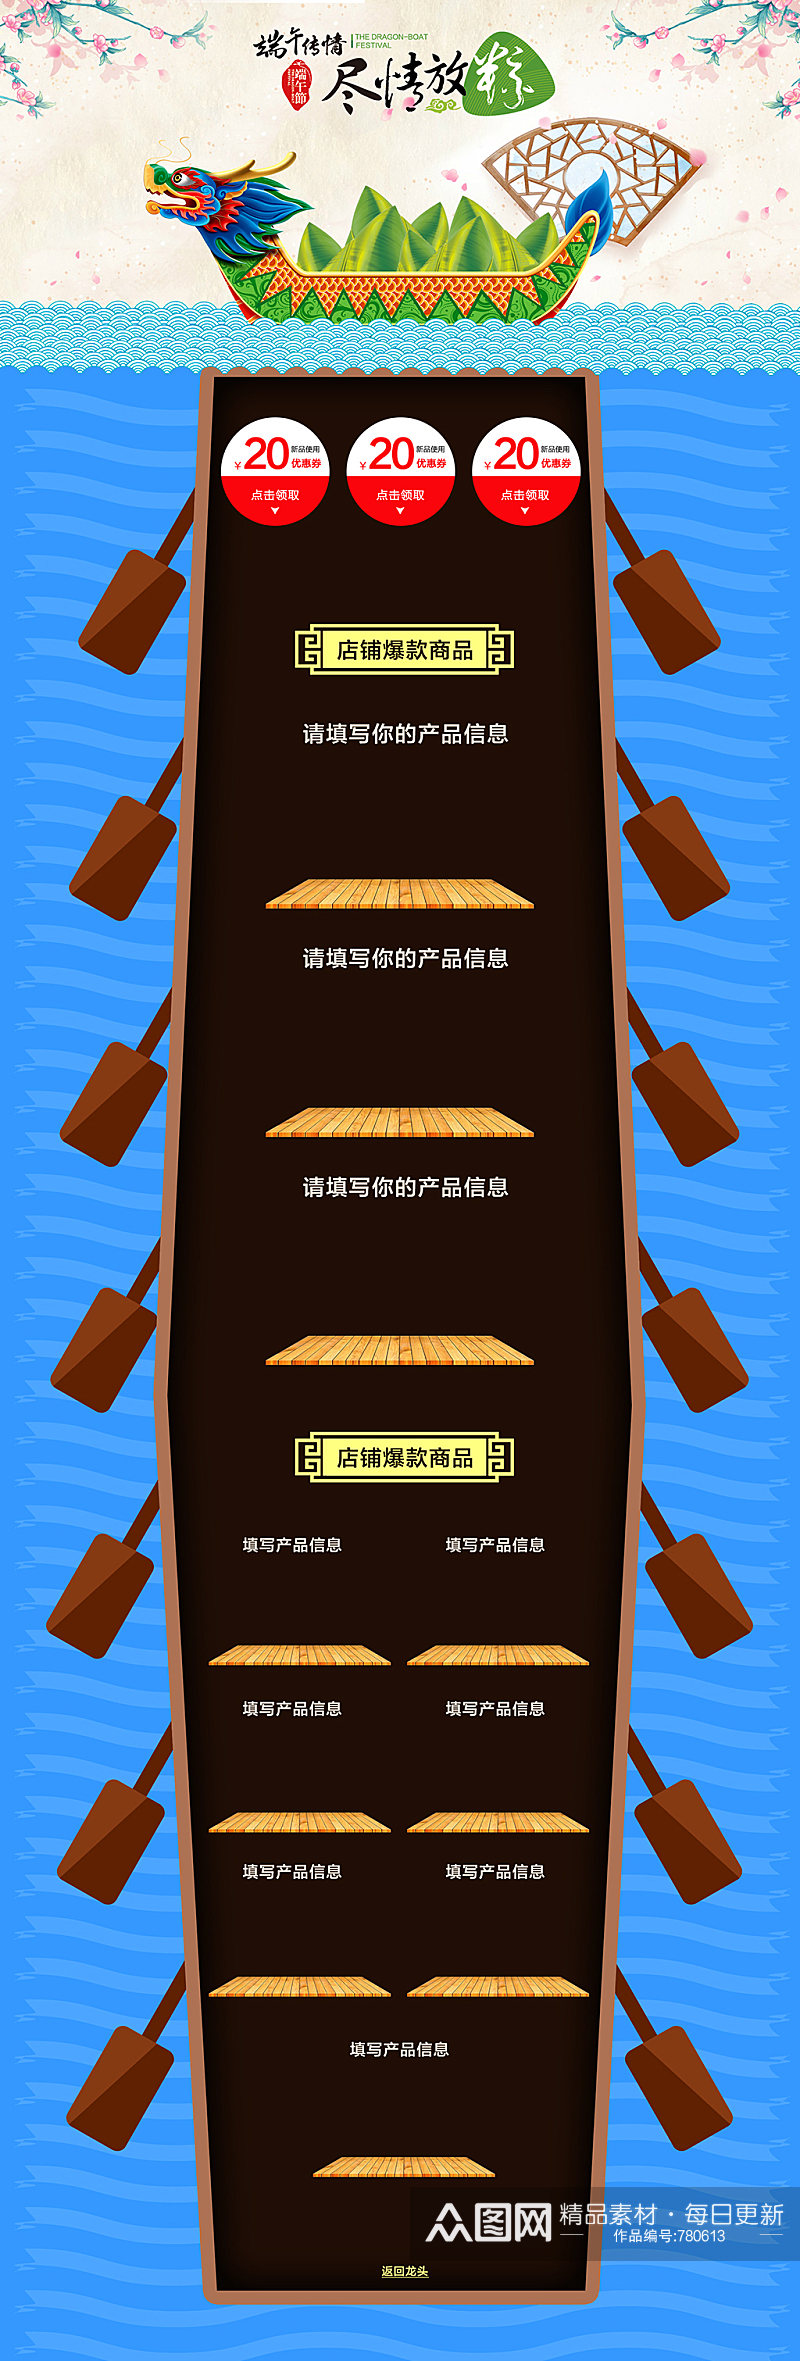 端午节龙舟节粽子节赛龙舟中国节日气氛首页素材